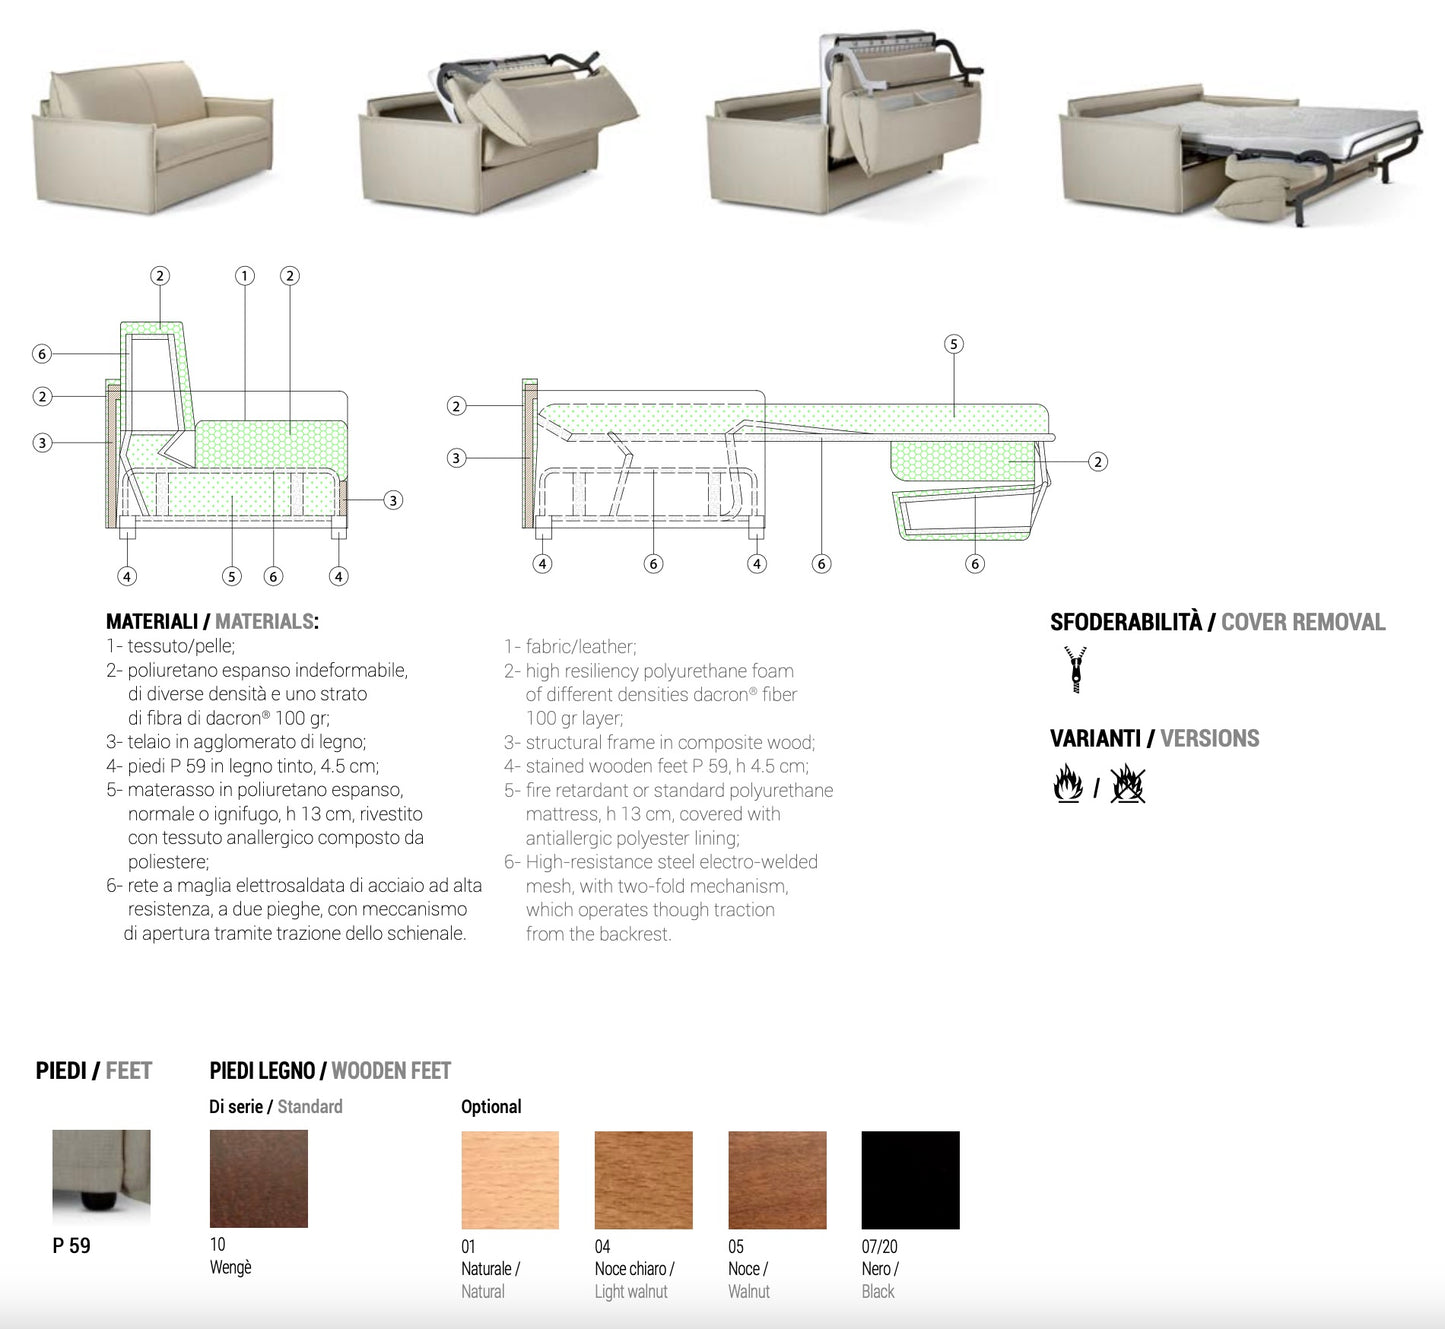 Atena 2-Seater Sofa Bed by Domingo Salotti